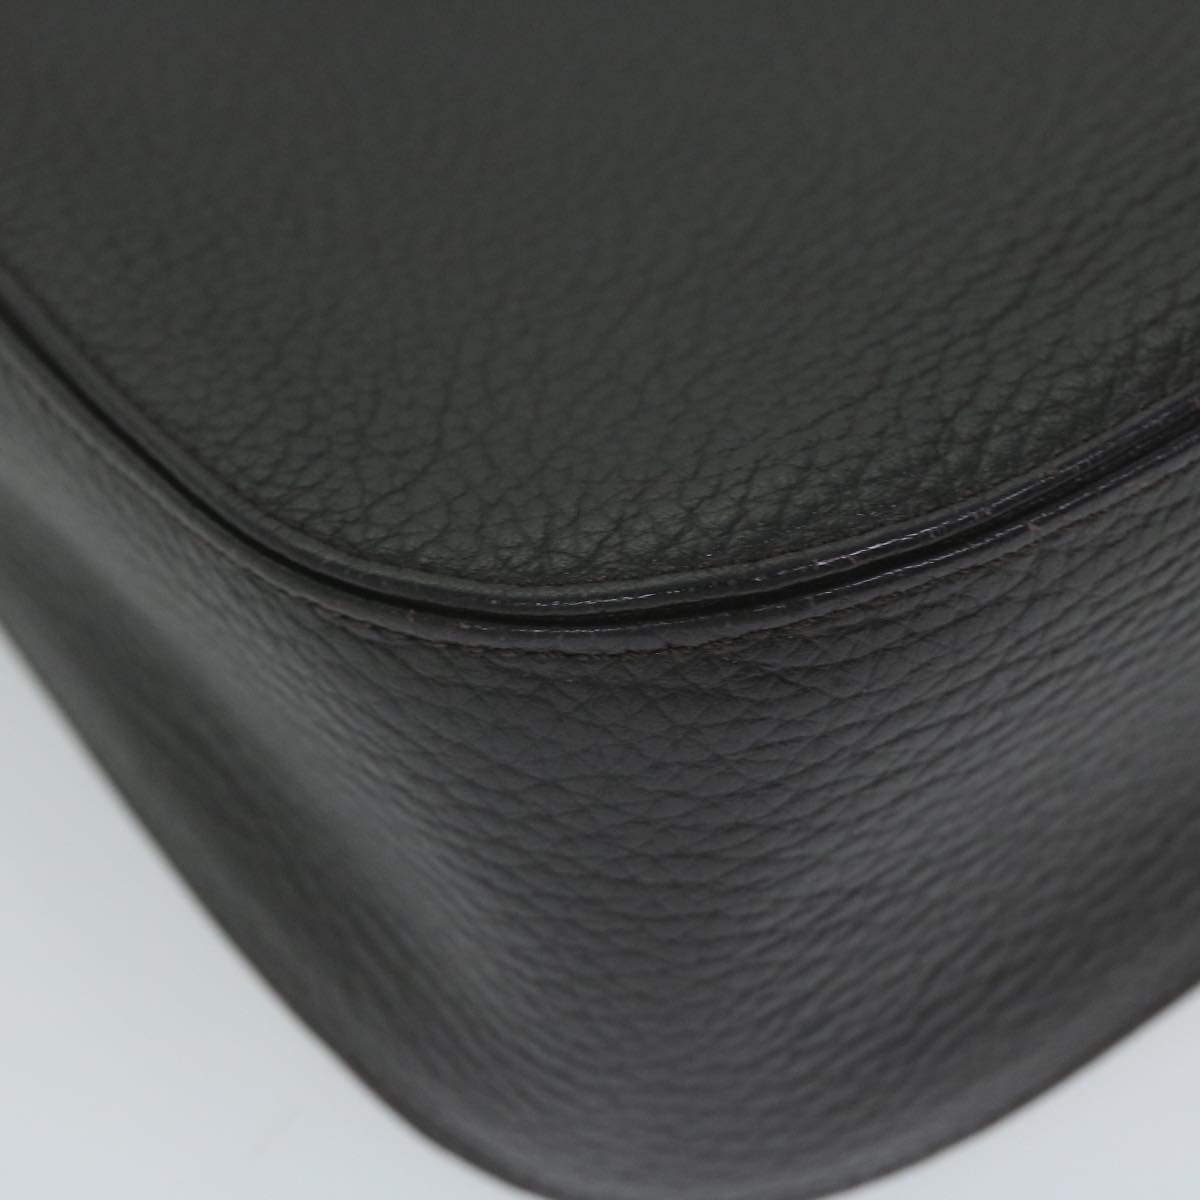 SAINT LAURENT Shoulder Bag Leather Brown Auth ar11048